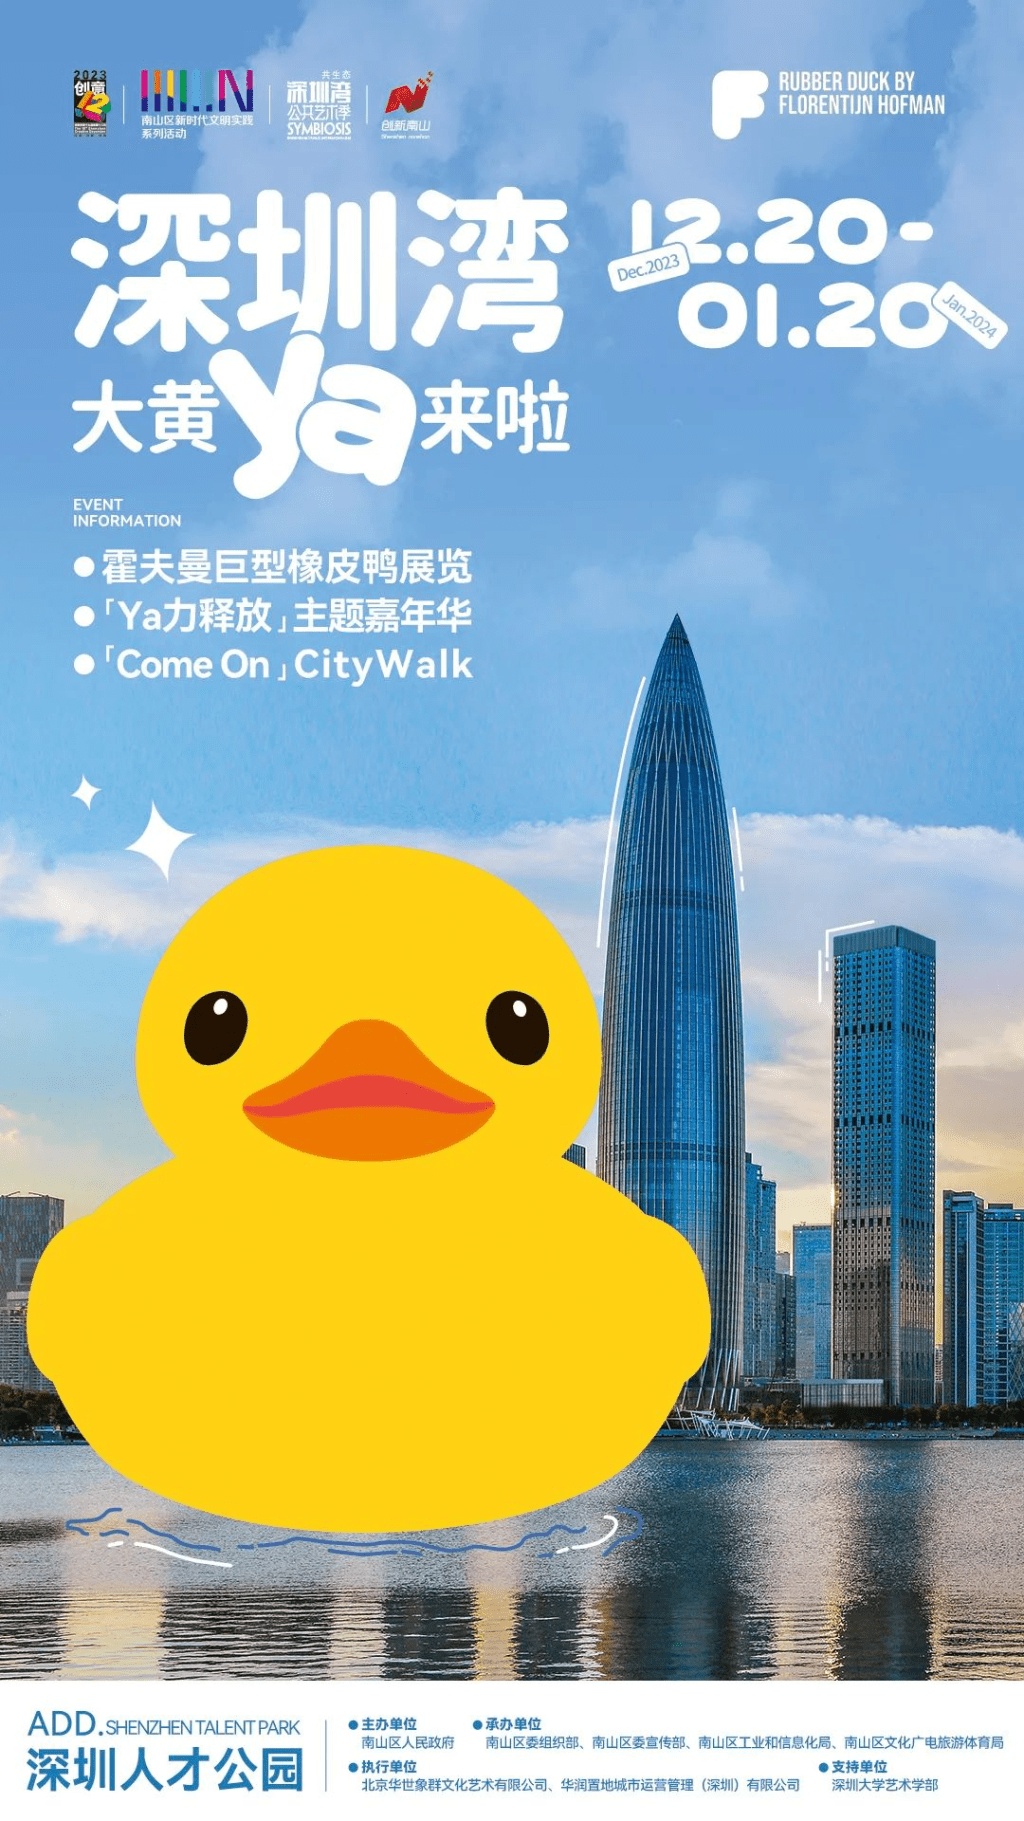 大黄鸭即将在深圳湾展出。